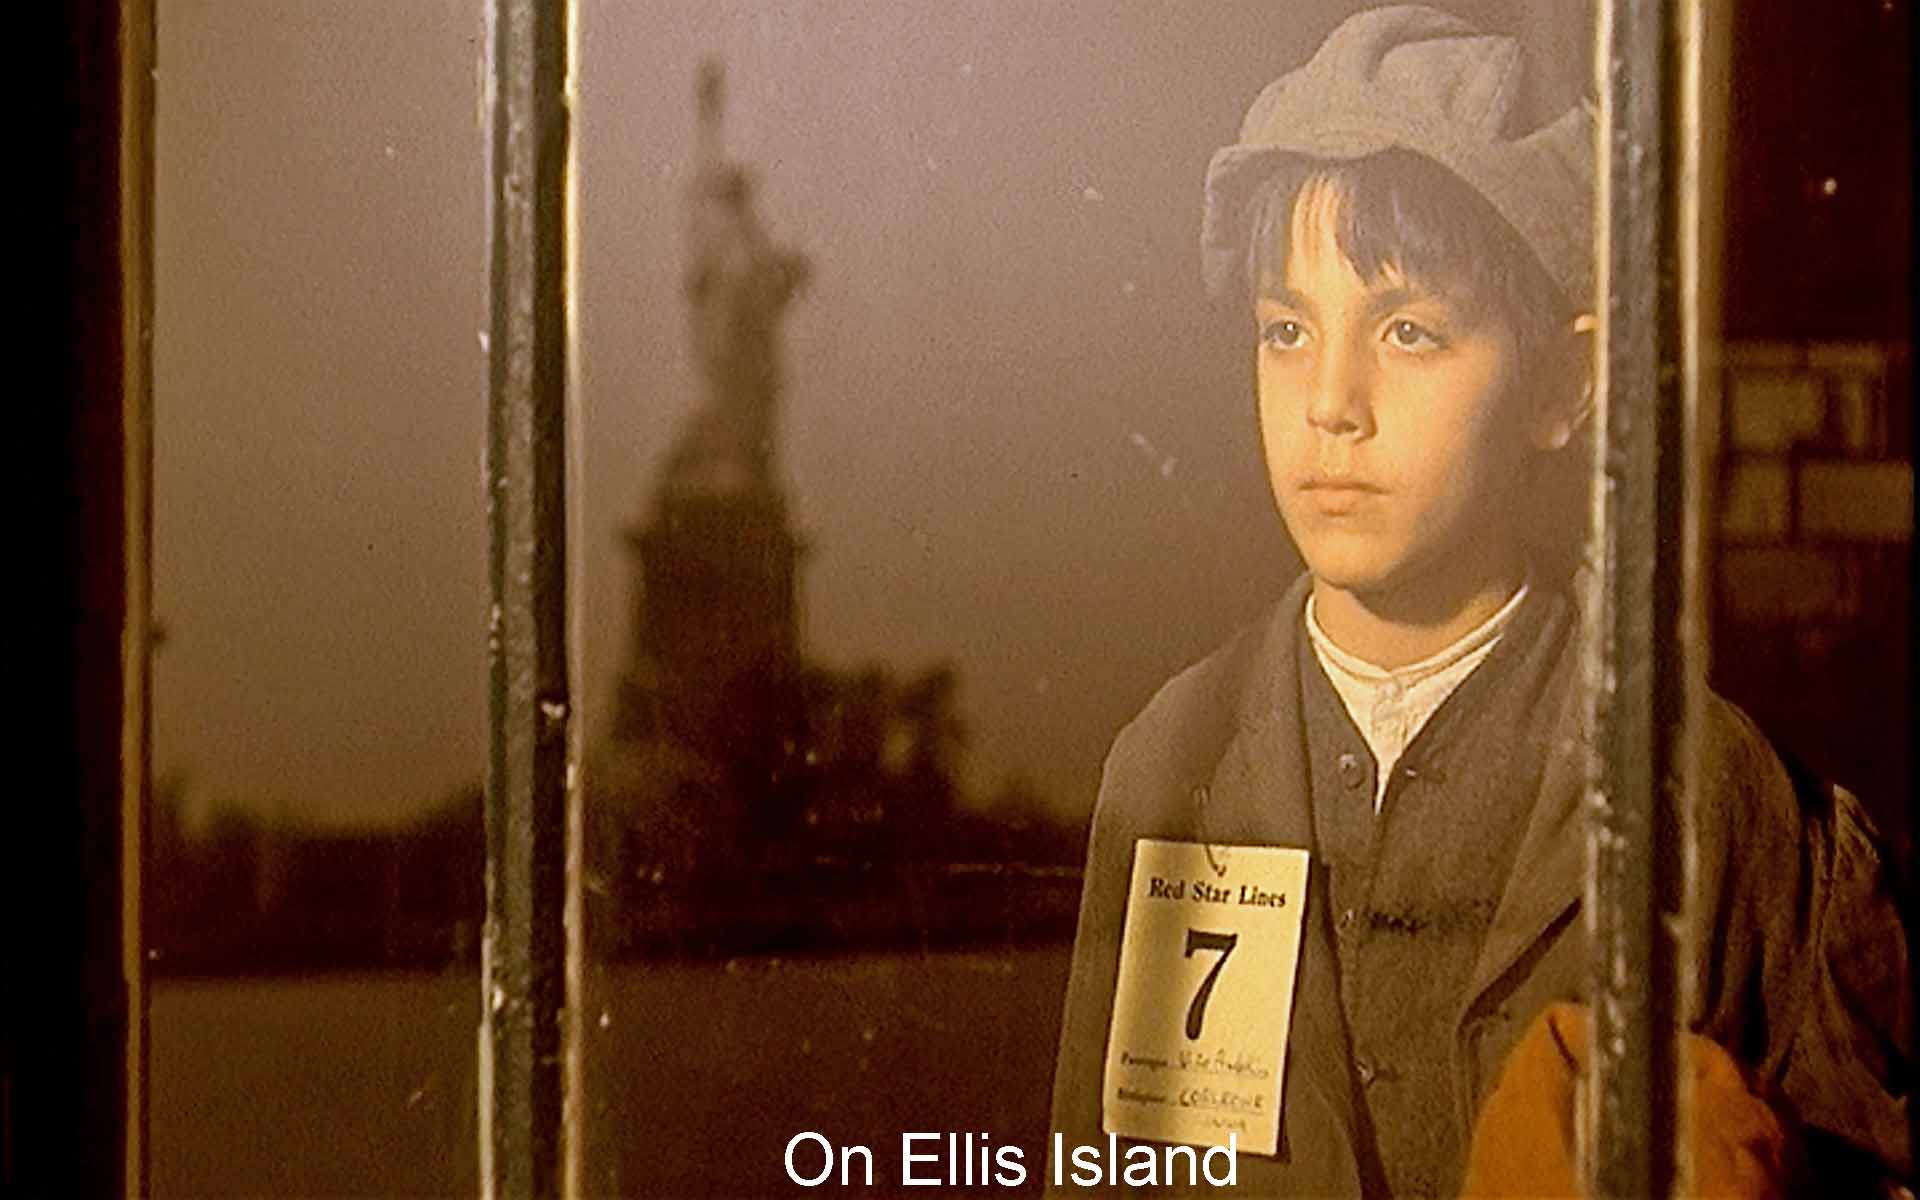 On Ellis Island